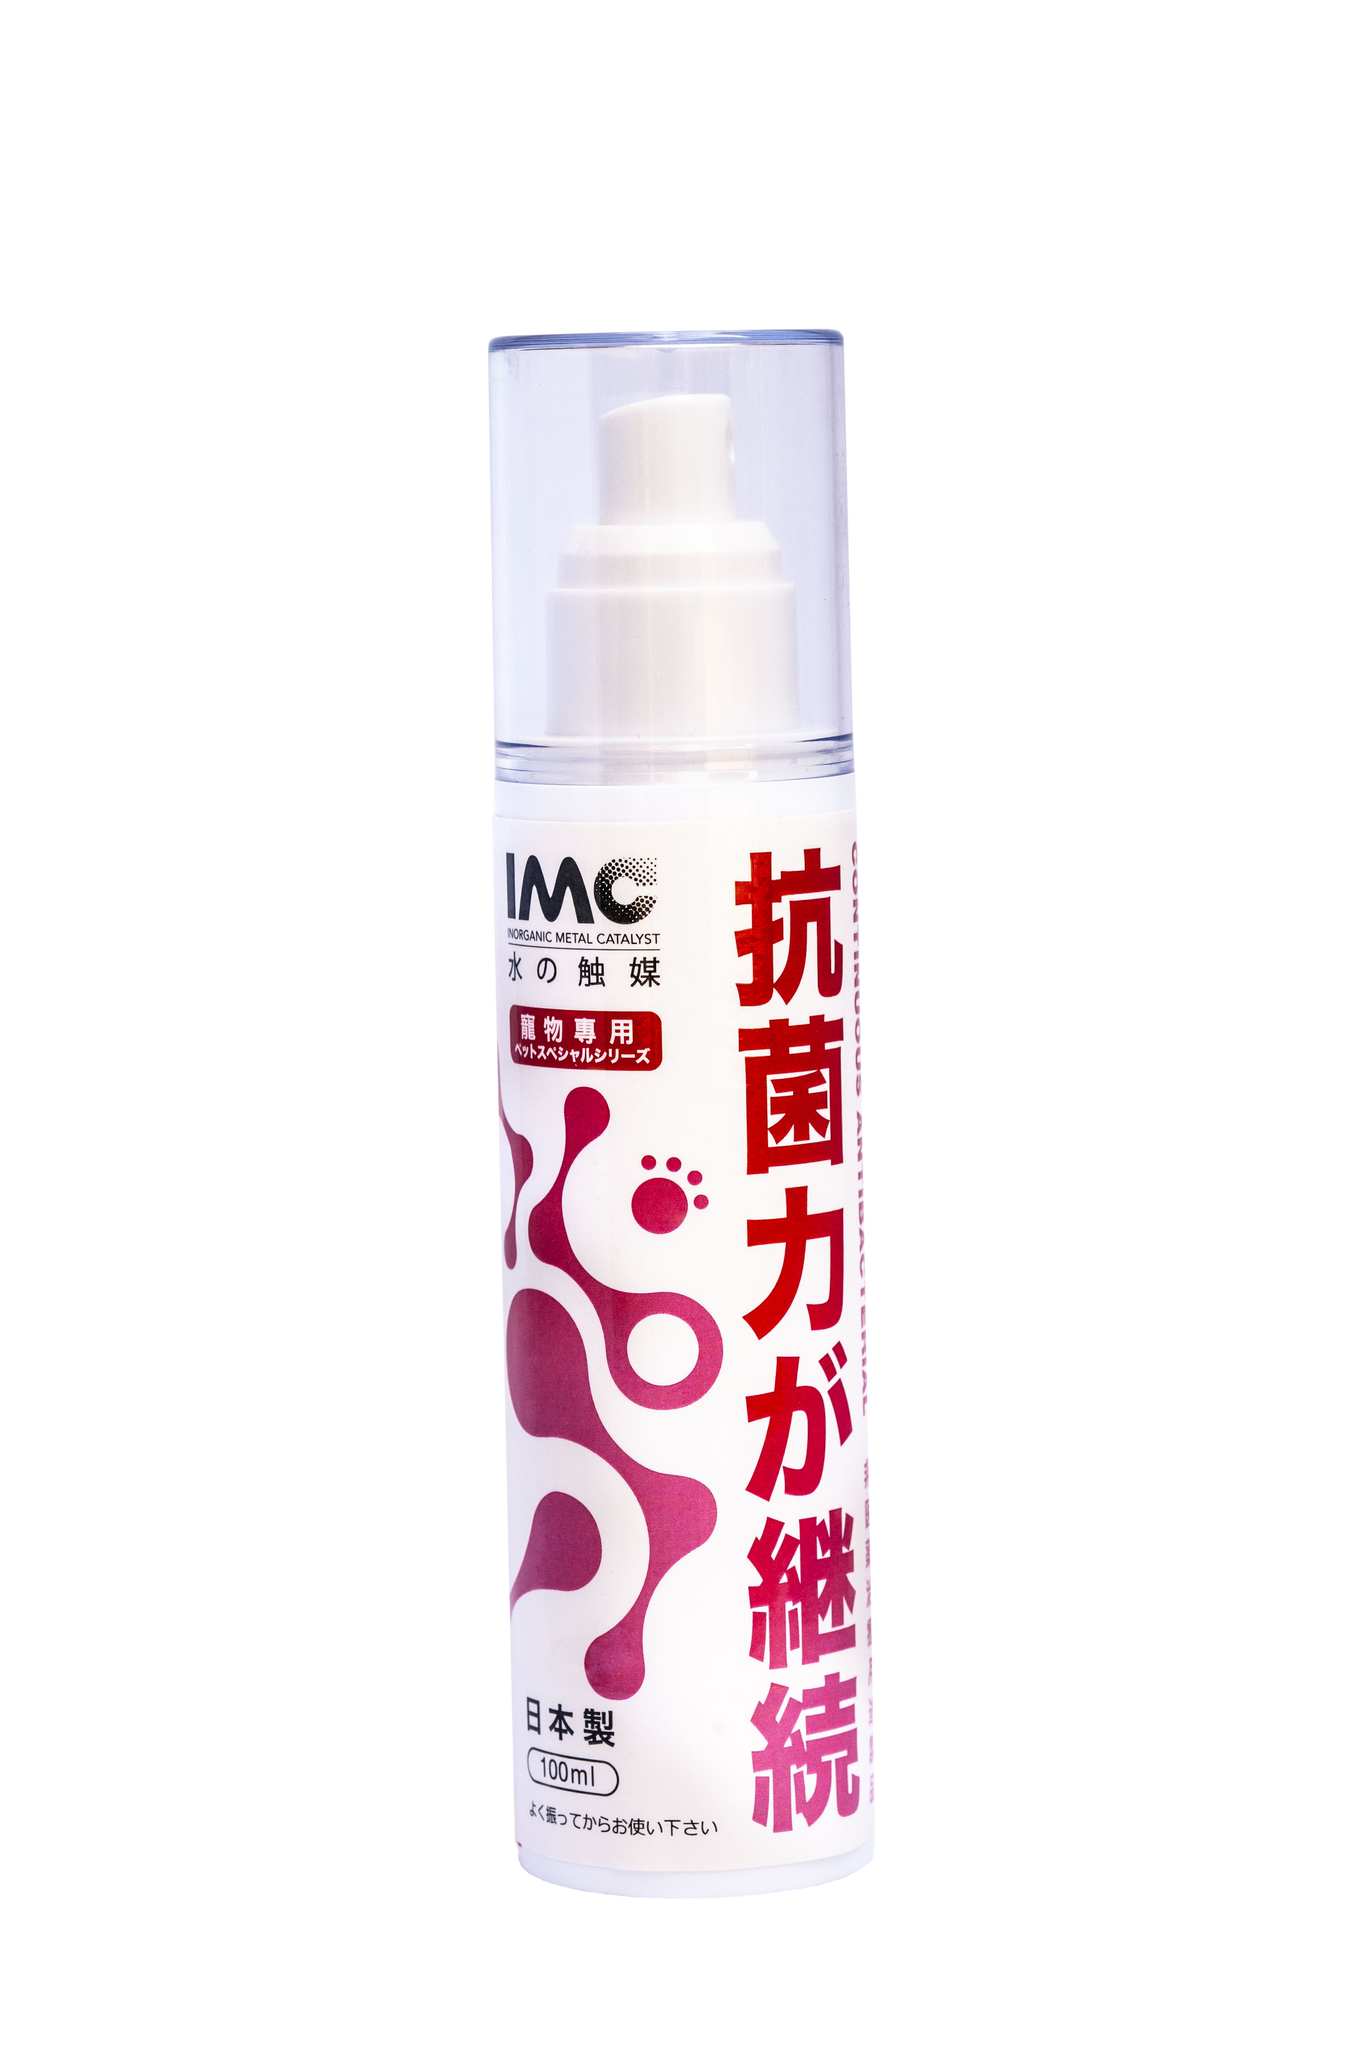 【Made in Japan 日本製造】 IMC 寵物用水觸媒抗病毒家用消毒噴霧 - 10 ml